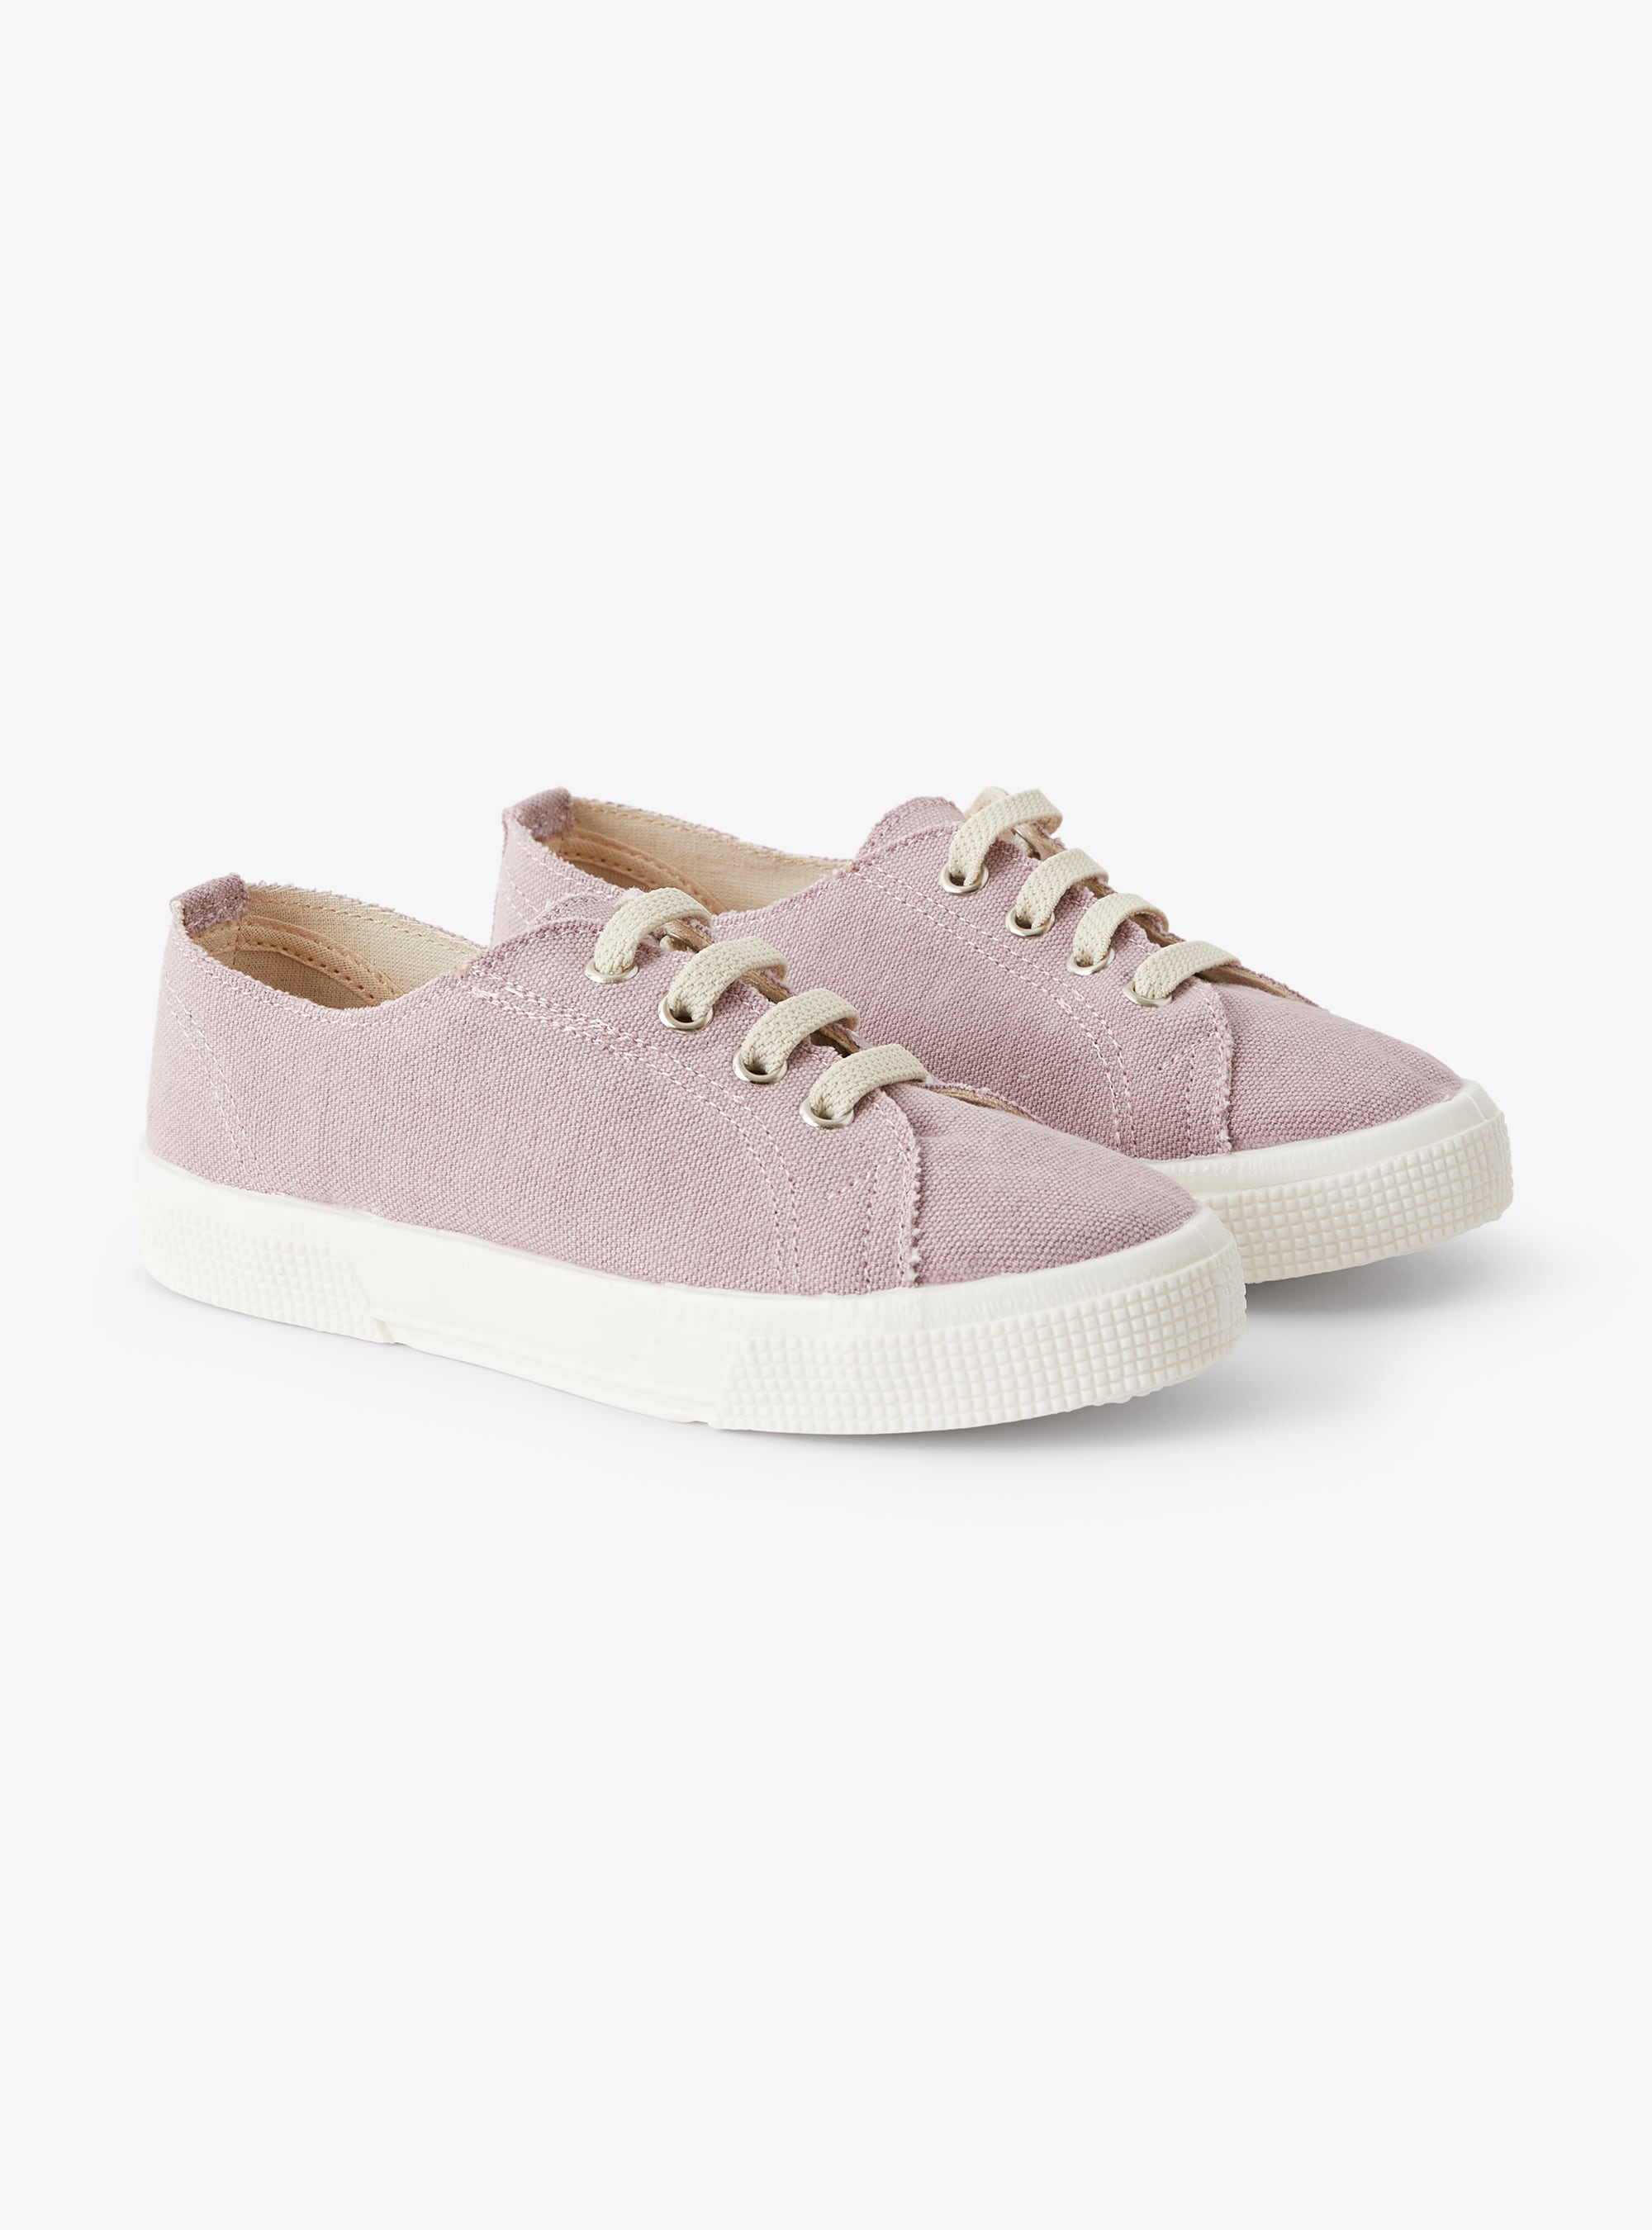 Sneakers aus lila Segeltuch mit Senkeln - Schuhe - Il Gufo